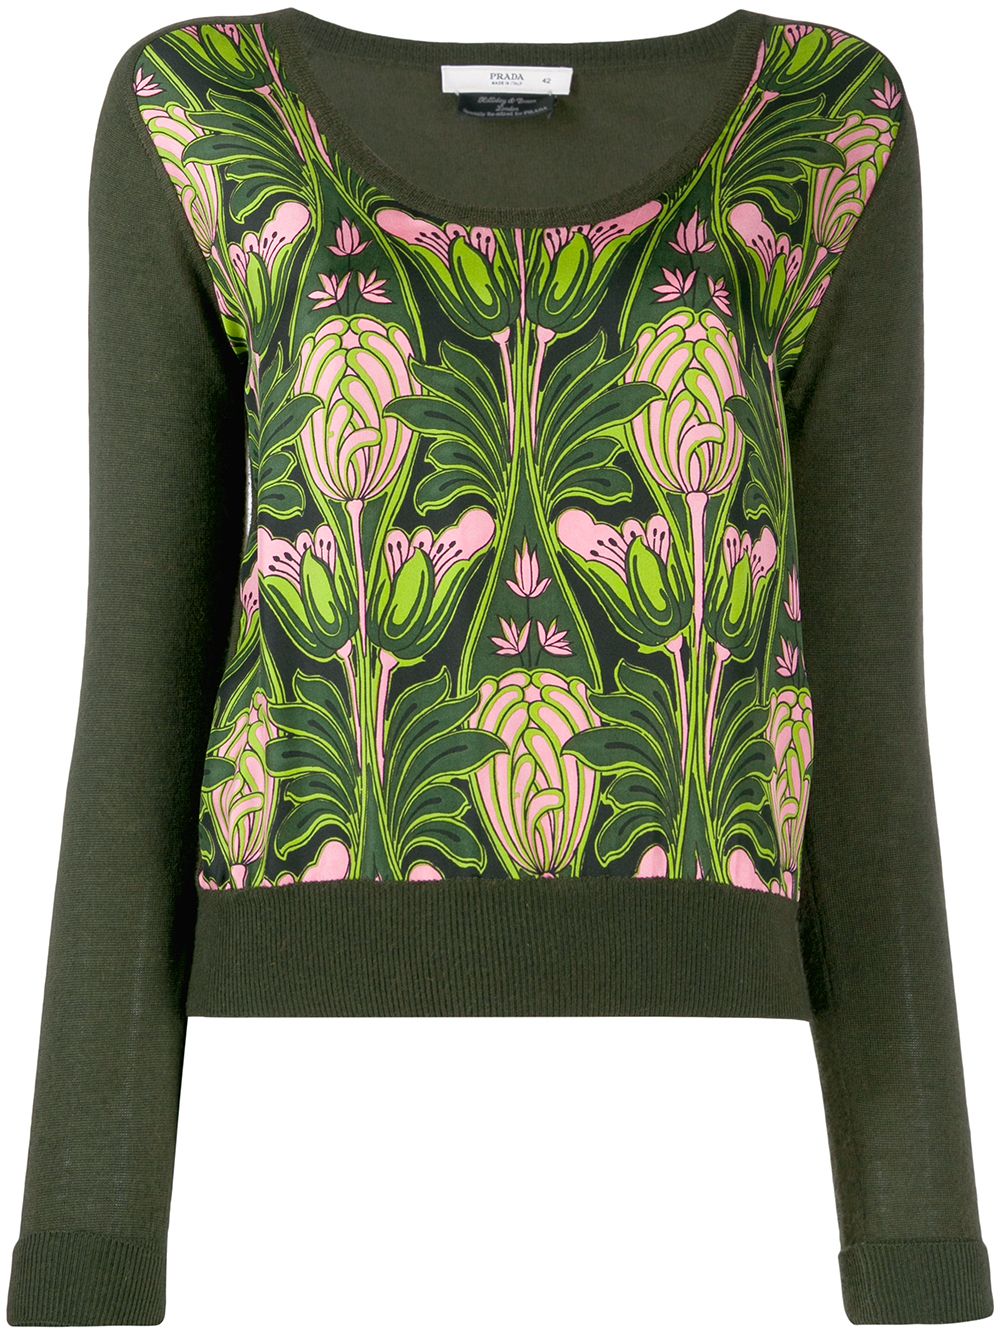 фото Prada Pre-Owned трикотажная блузка 1990-х годов с цветочным принтом